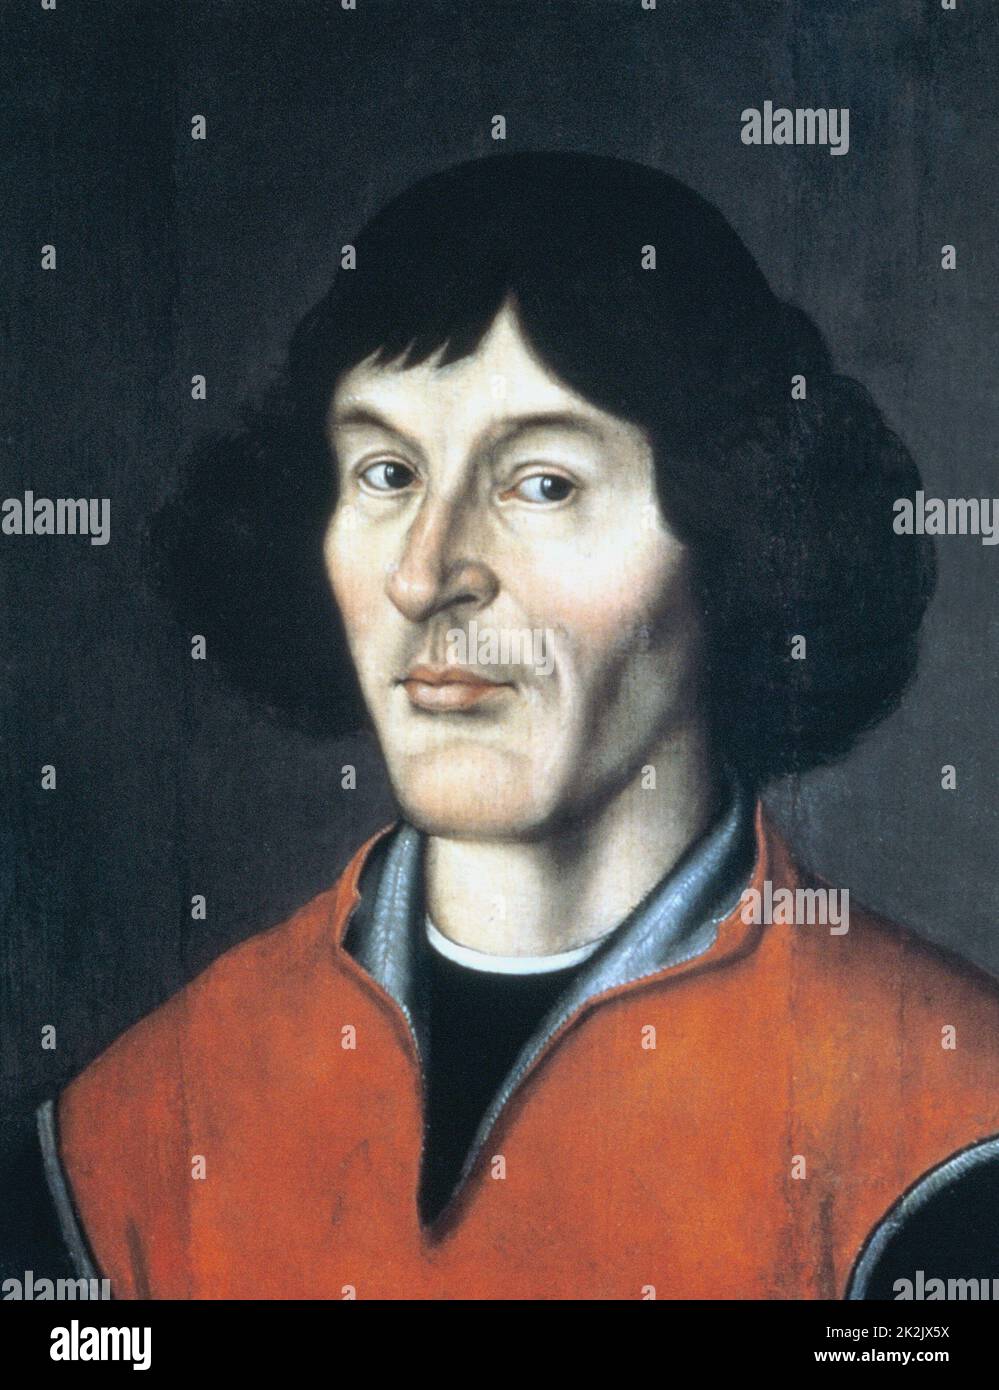 Nicolas Copernicus (1473-1543) astronome polonais. Système héliocentrique de l'univers. Portrait anonyme du 16th siècle Banque D'Images